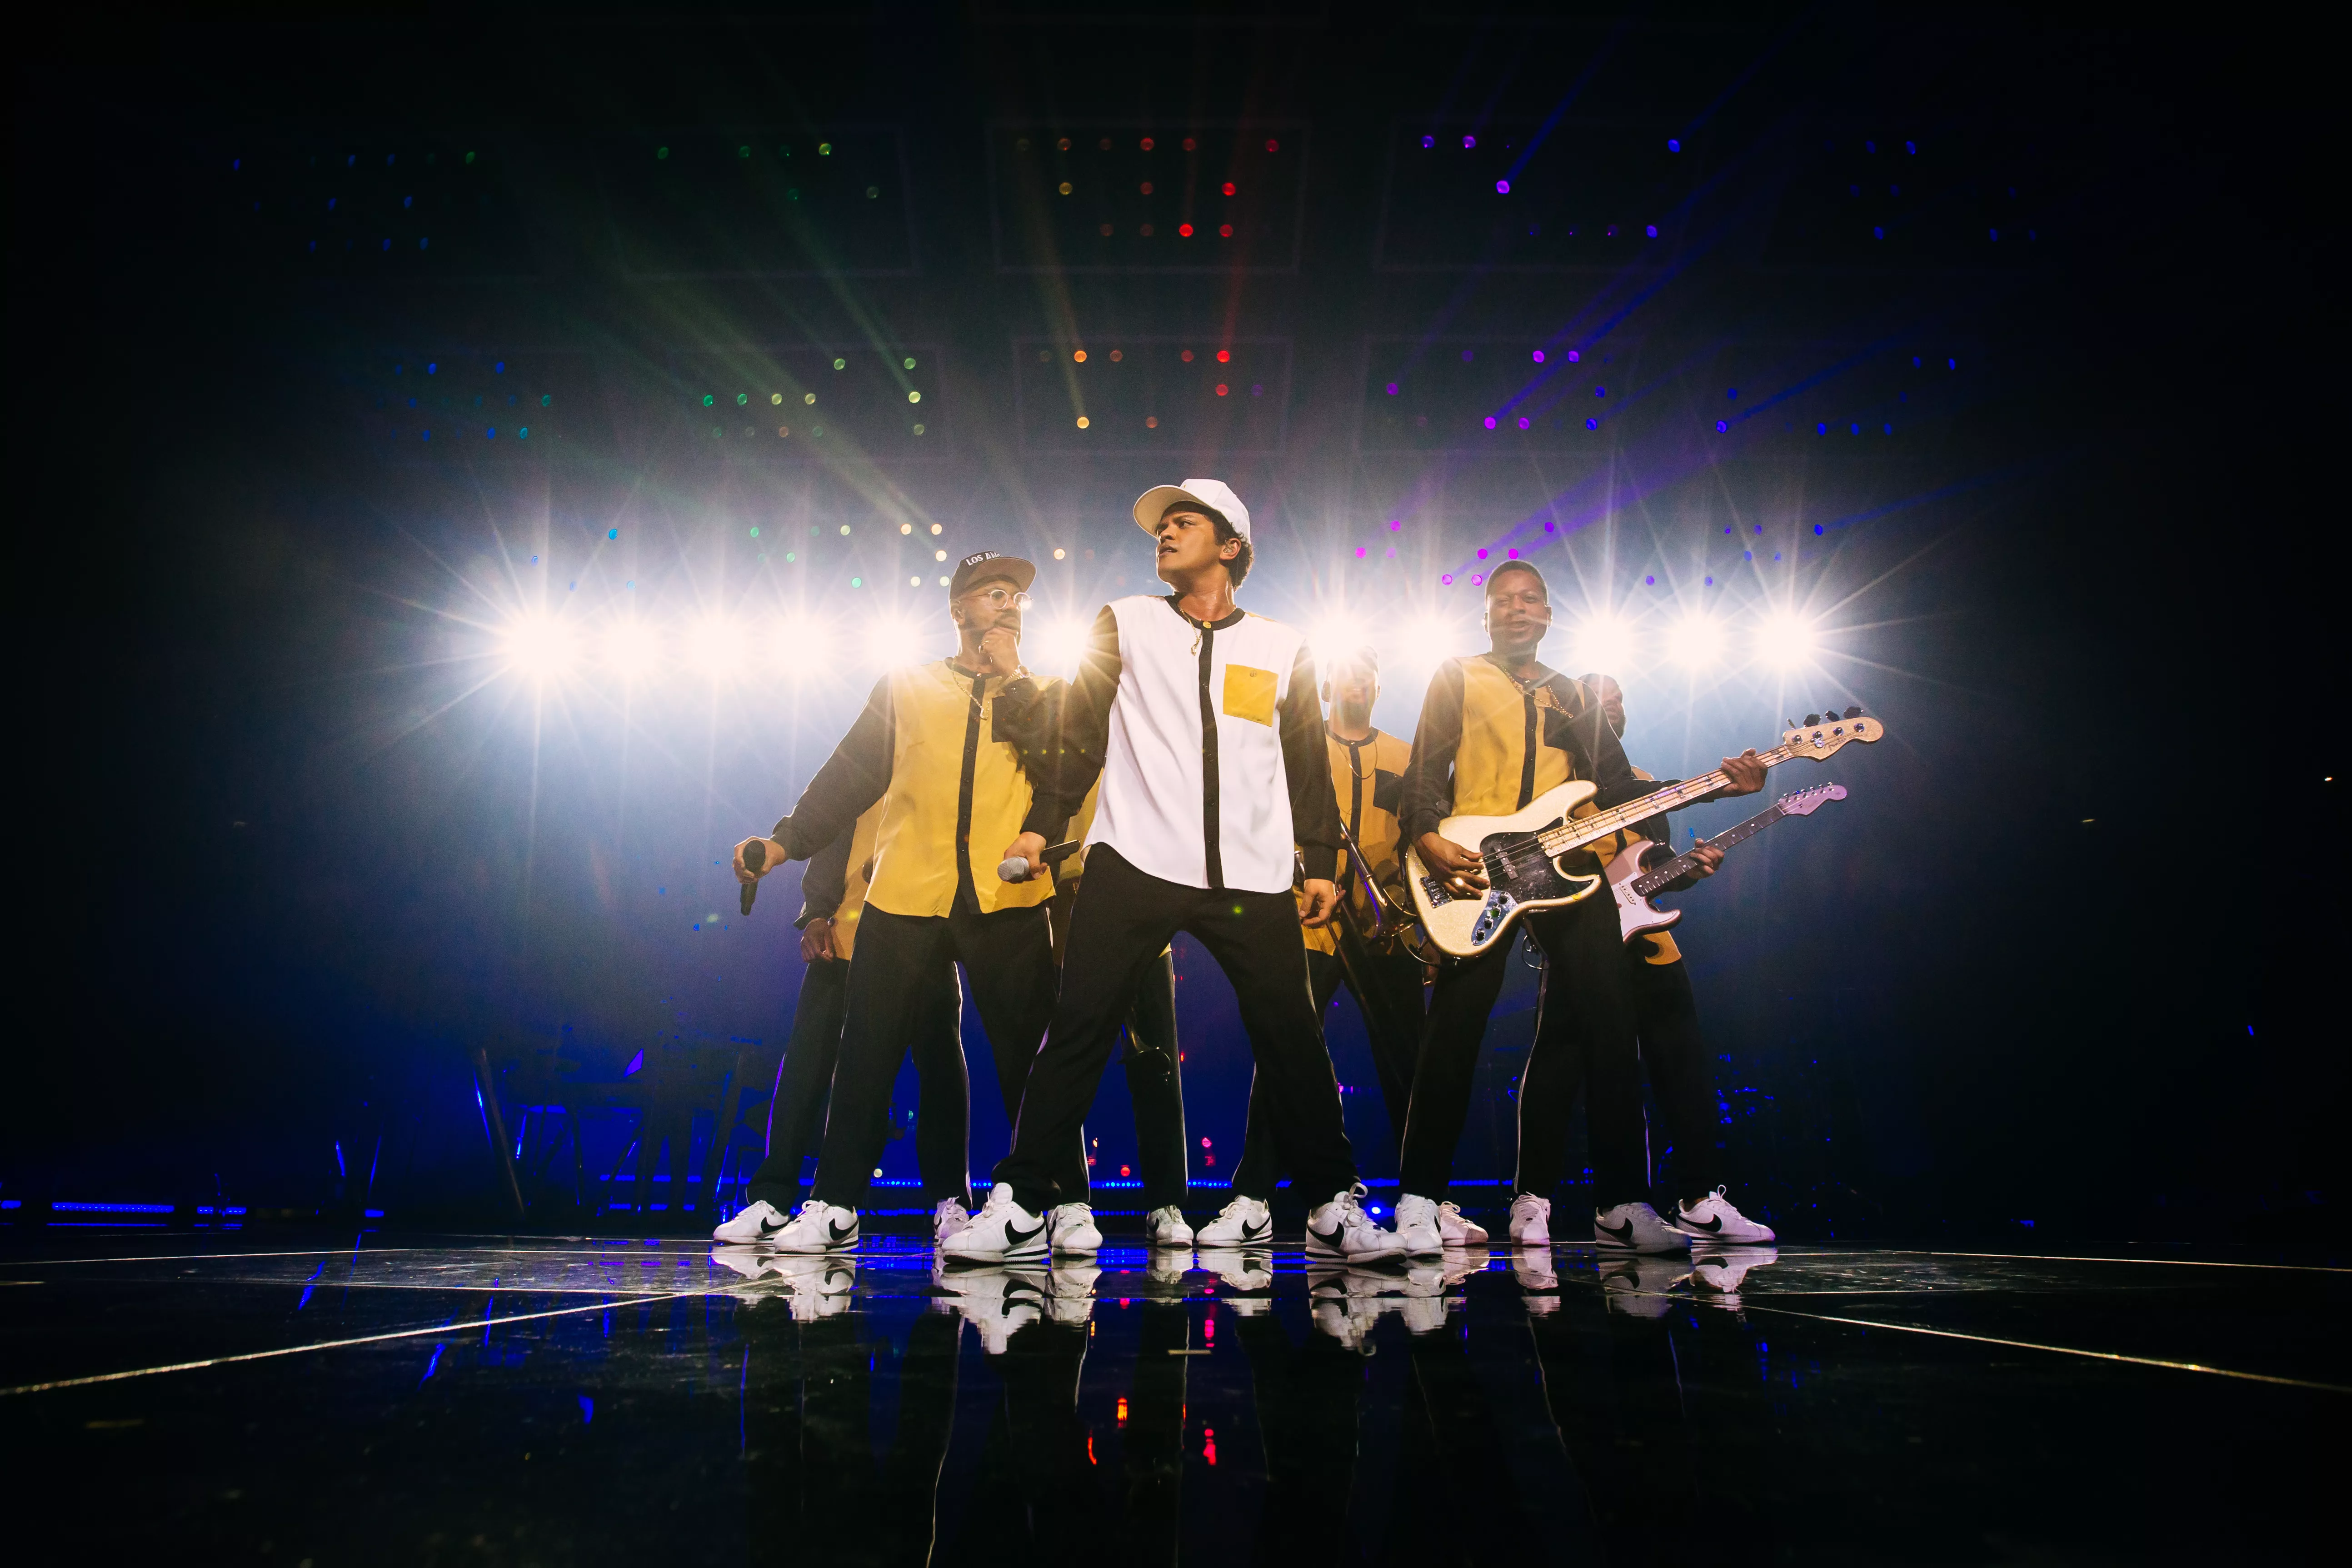 Bruno Mars-interview: Min musik skal give lyst til at danse, blive forelsket, græde, elske, alt